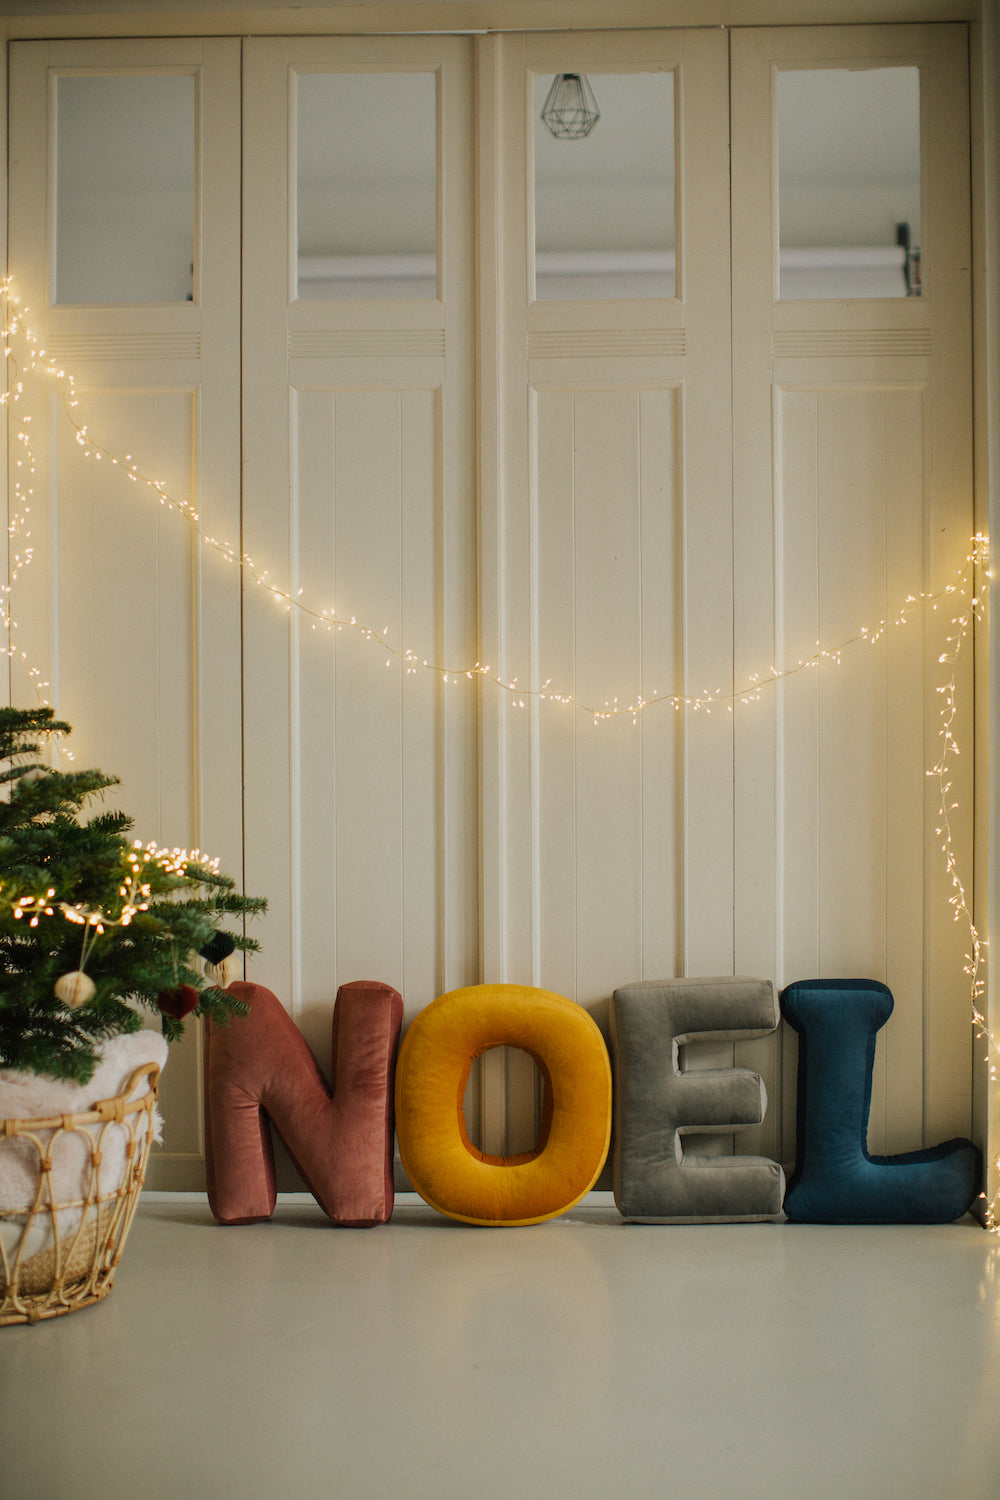 poduszki literki welurowe od Bettys Home tworzące napis NOEL jako dekoracja świąteczna do domu na kanapę